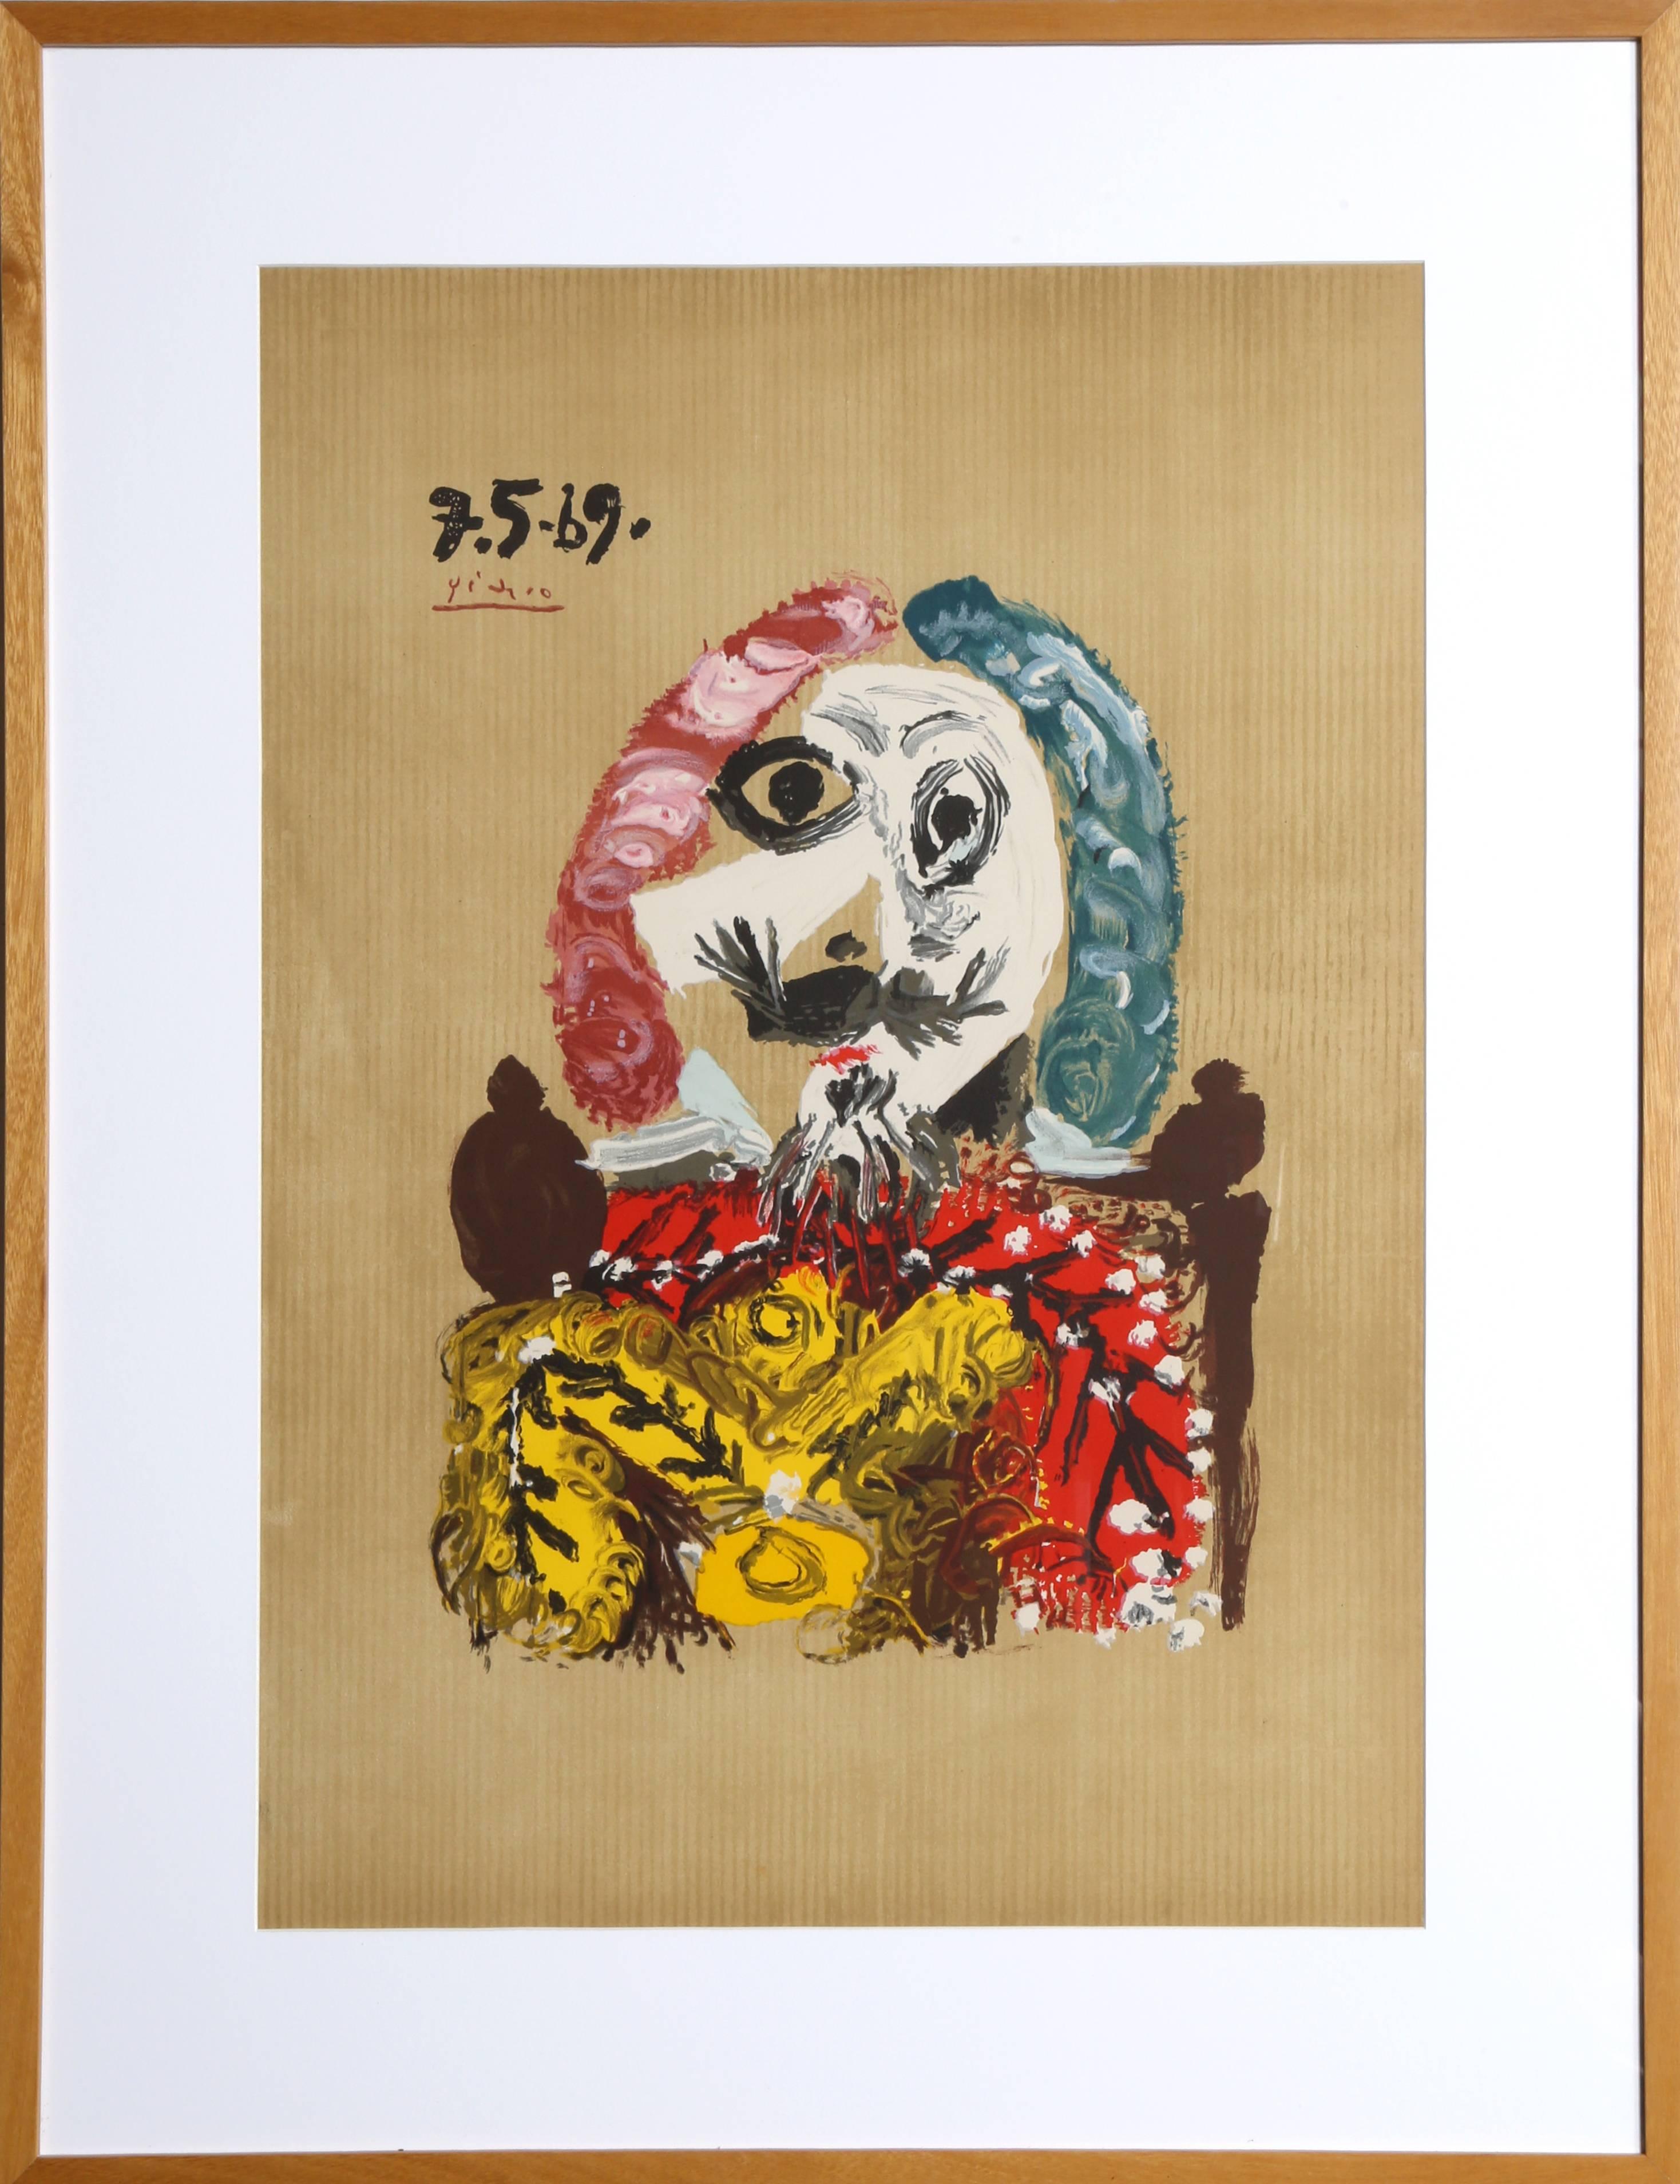 (after) Pablo Picasso Portrait Print - Imaginary Portrait, Lithograph 1969